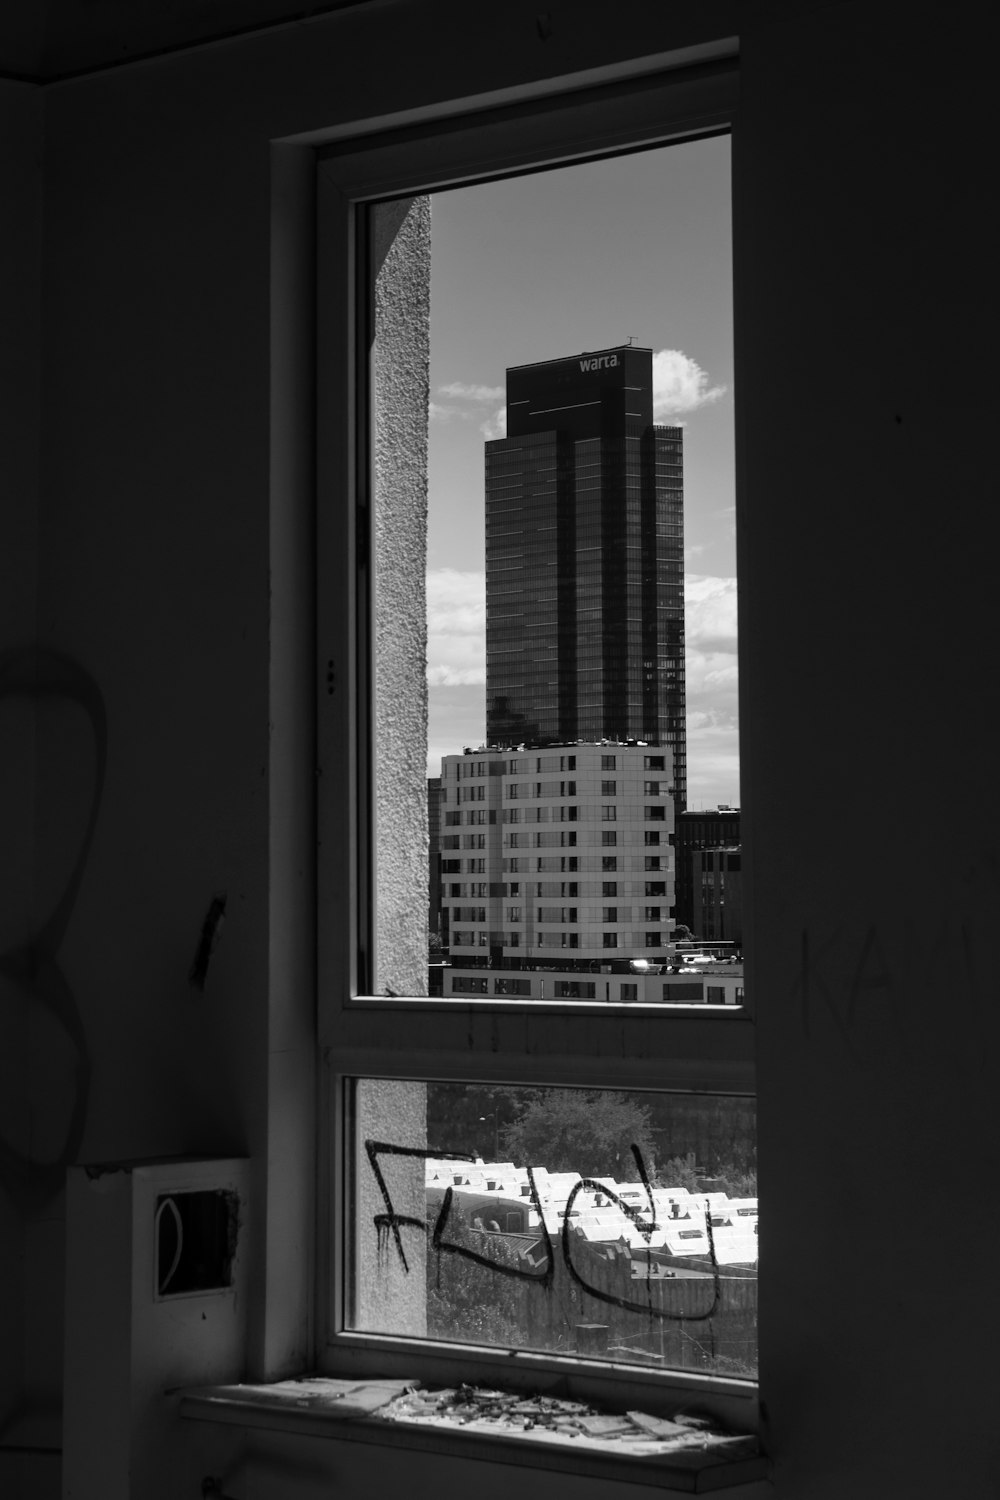 Una vista de una ciudad a través de una ventana